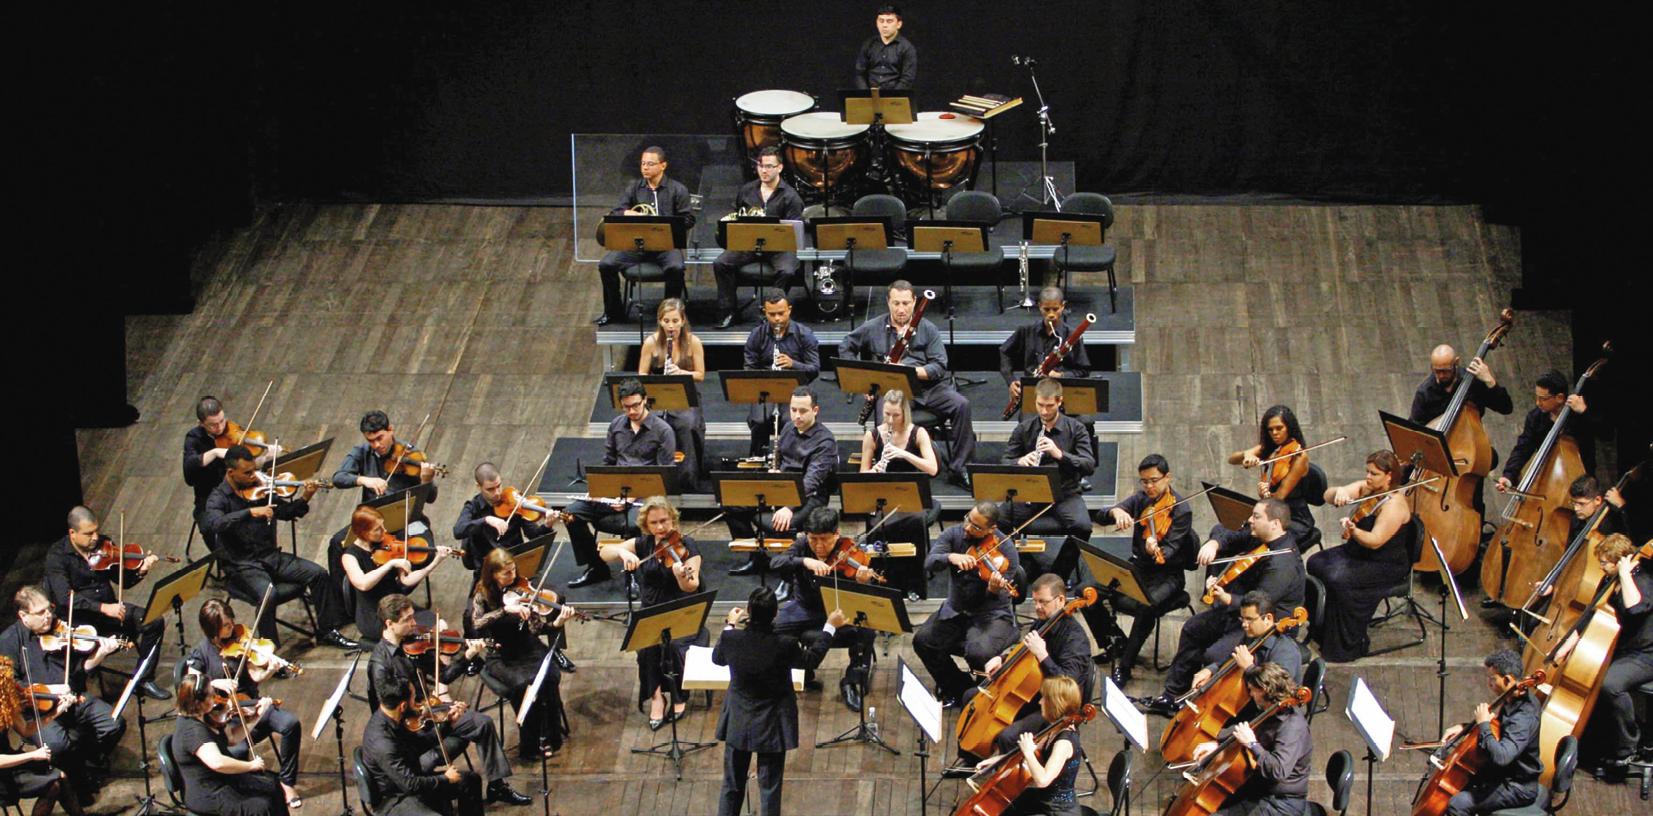 Fotografia. Vista de cima de uma orquestra posicionada no palco. No centro, o  maestro está em pé, de frente para a orquestra. À esquerda e à direita, estão músicos tocando instrumentos de corda. No centro, ao fundo, estão músicos tocando instrumentos de sopro e de percussão.